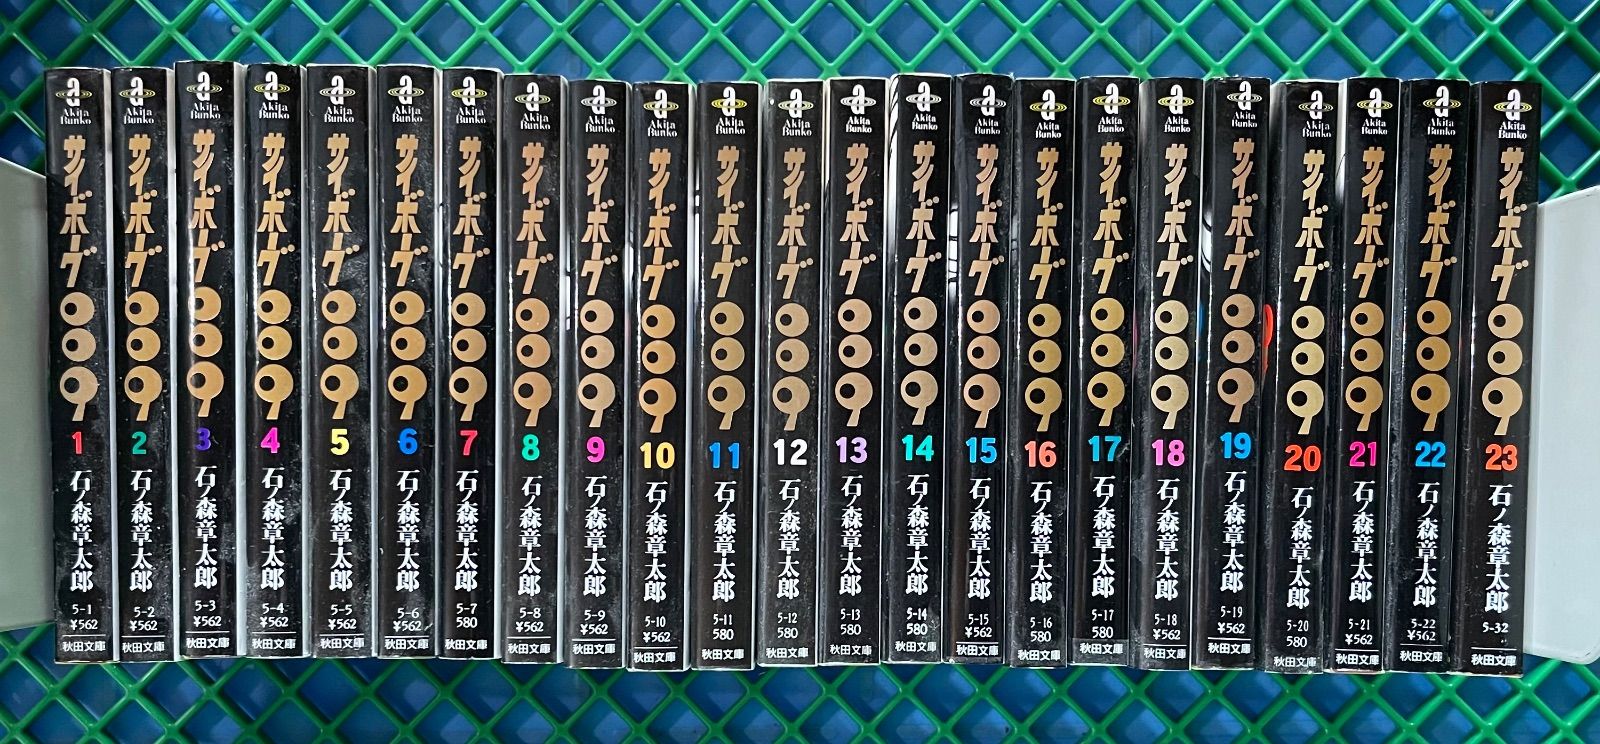 サイボーグ009 全23巻 文庫 石ノ森章太郎 - 漫画、コミック